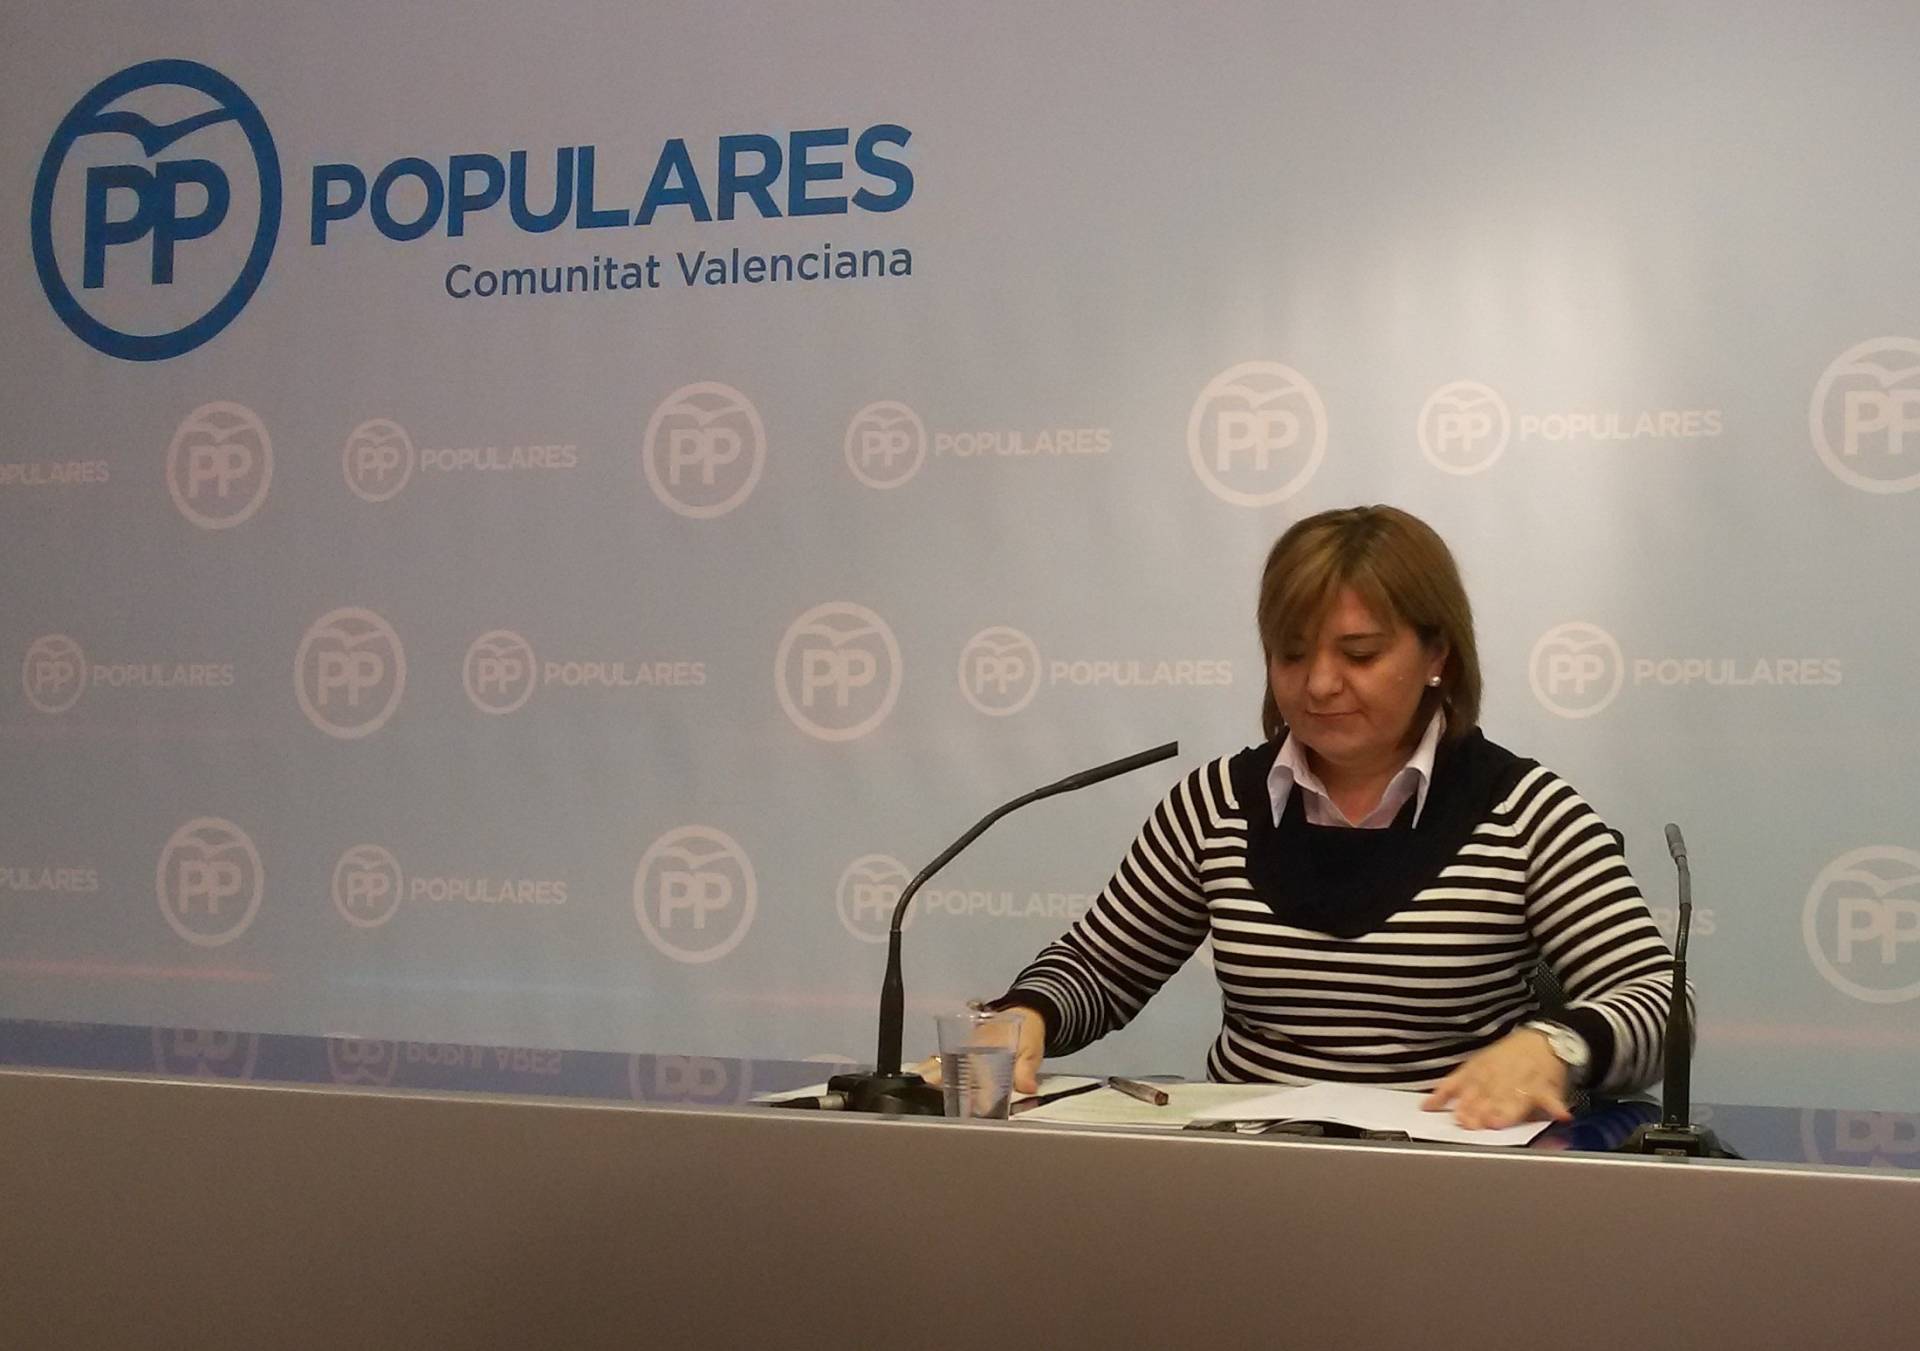 Valencia dobla la apuesta de Cifuentes en el PP: un militante, un compromisario